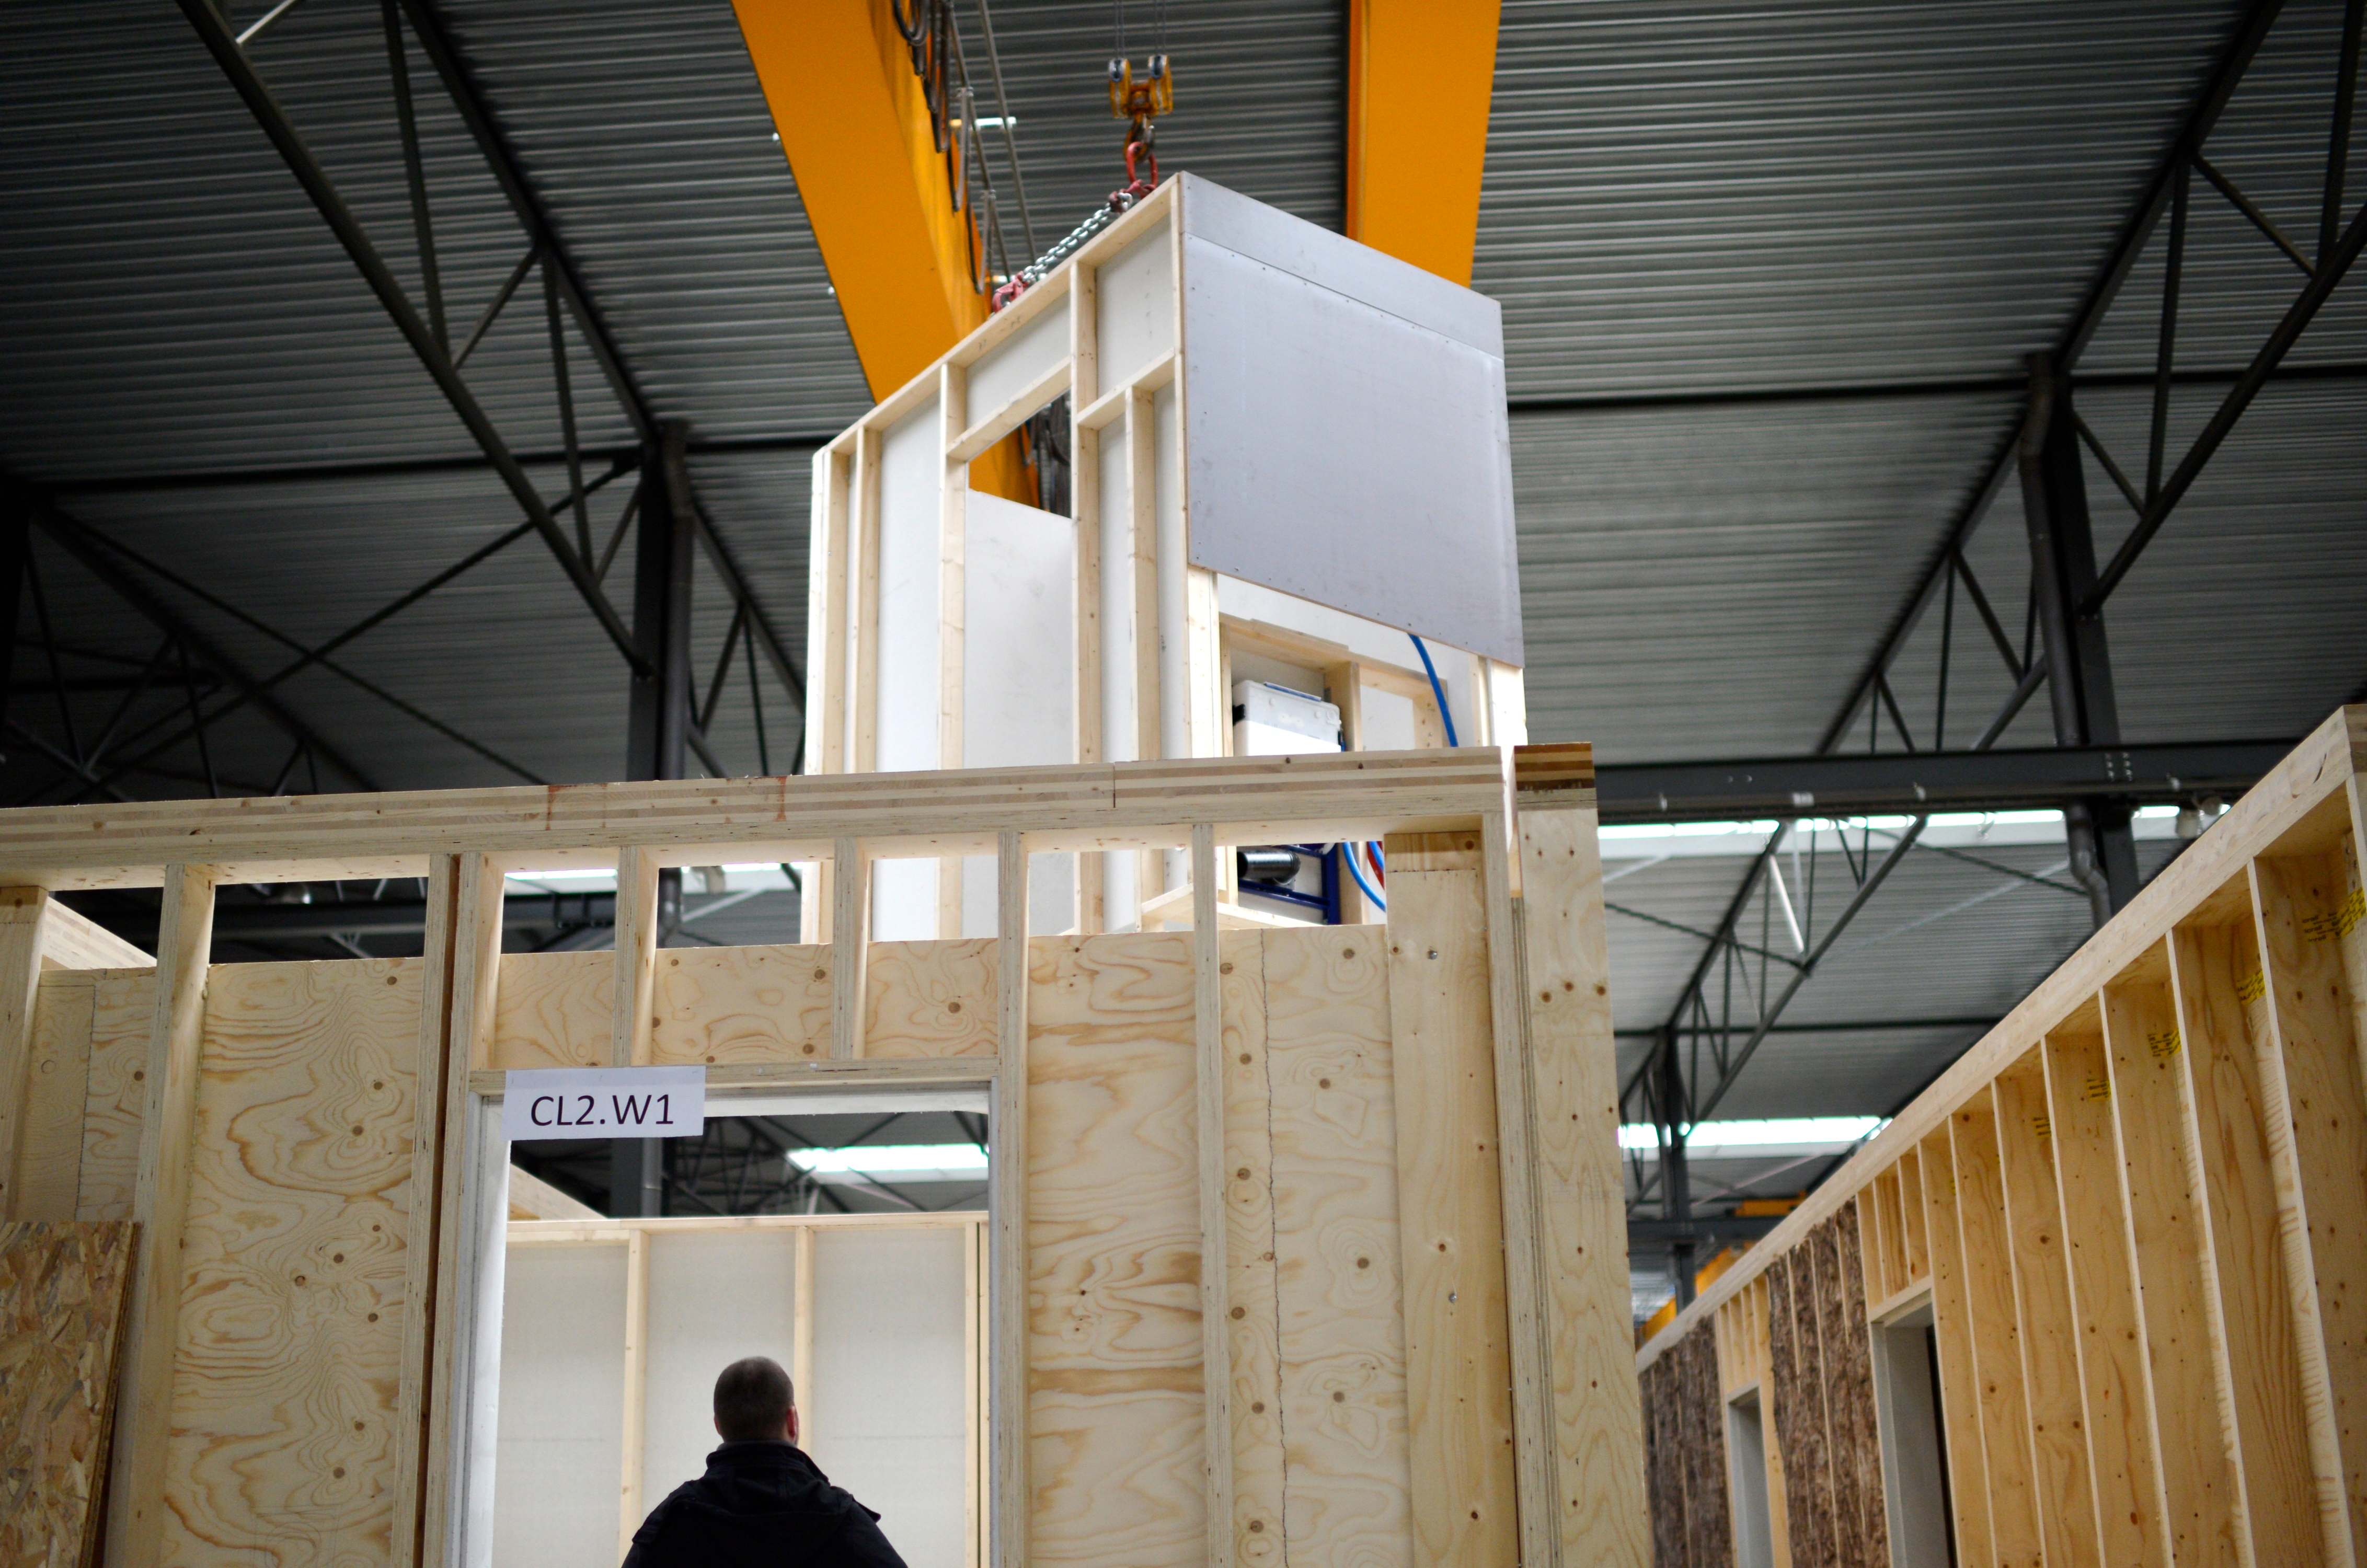 Skilpod bouwt modulaire prefab houtskeletbouw woningen in een atelier